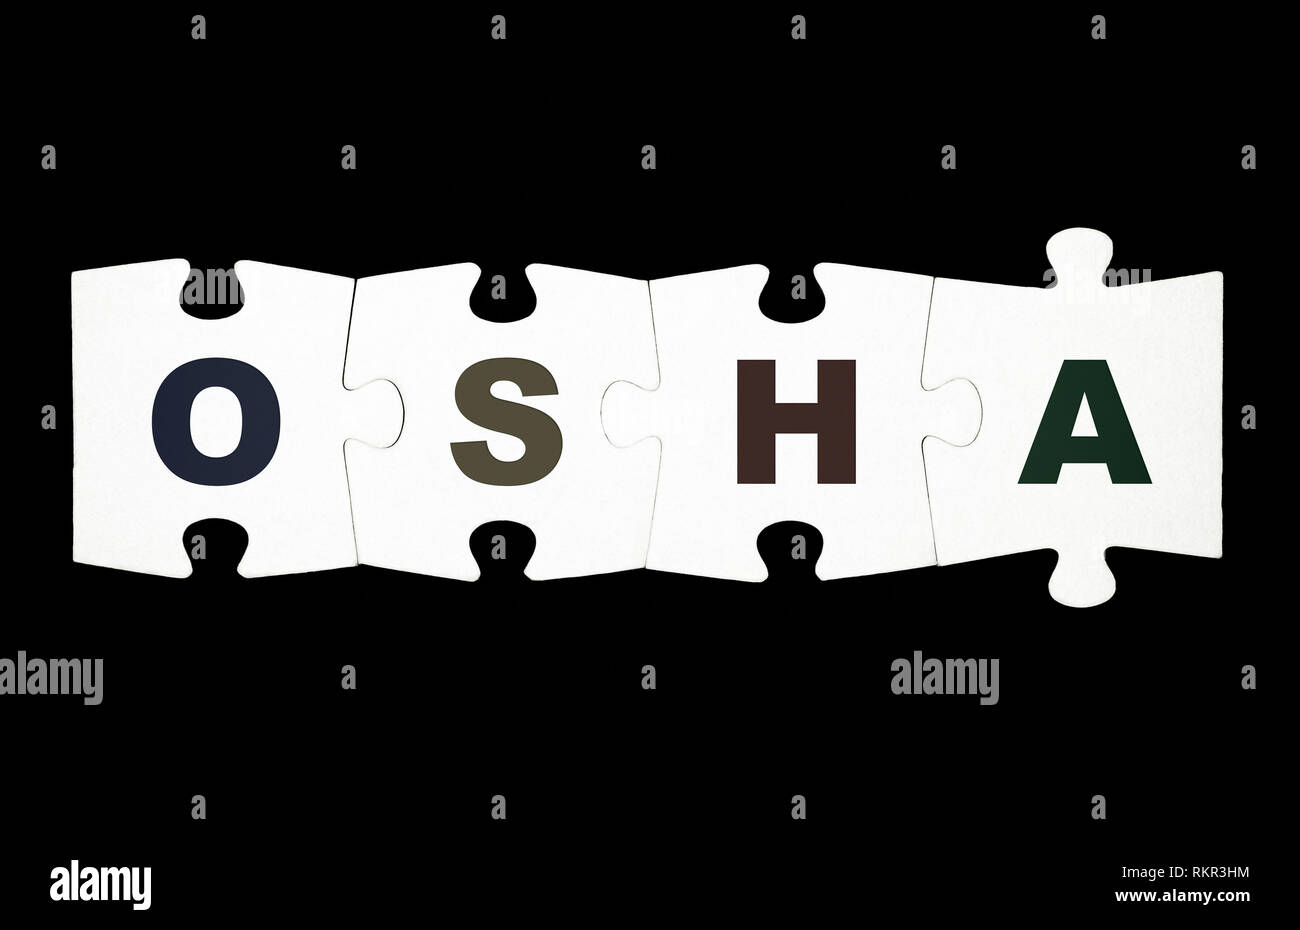 Quattro pezzi di un puzzle con lettere OSHA sono collegati insieme su sfondo nero Foto Stock